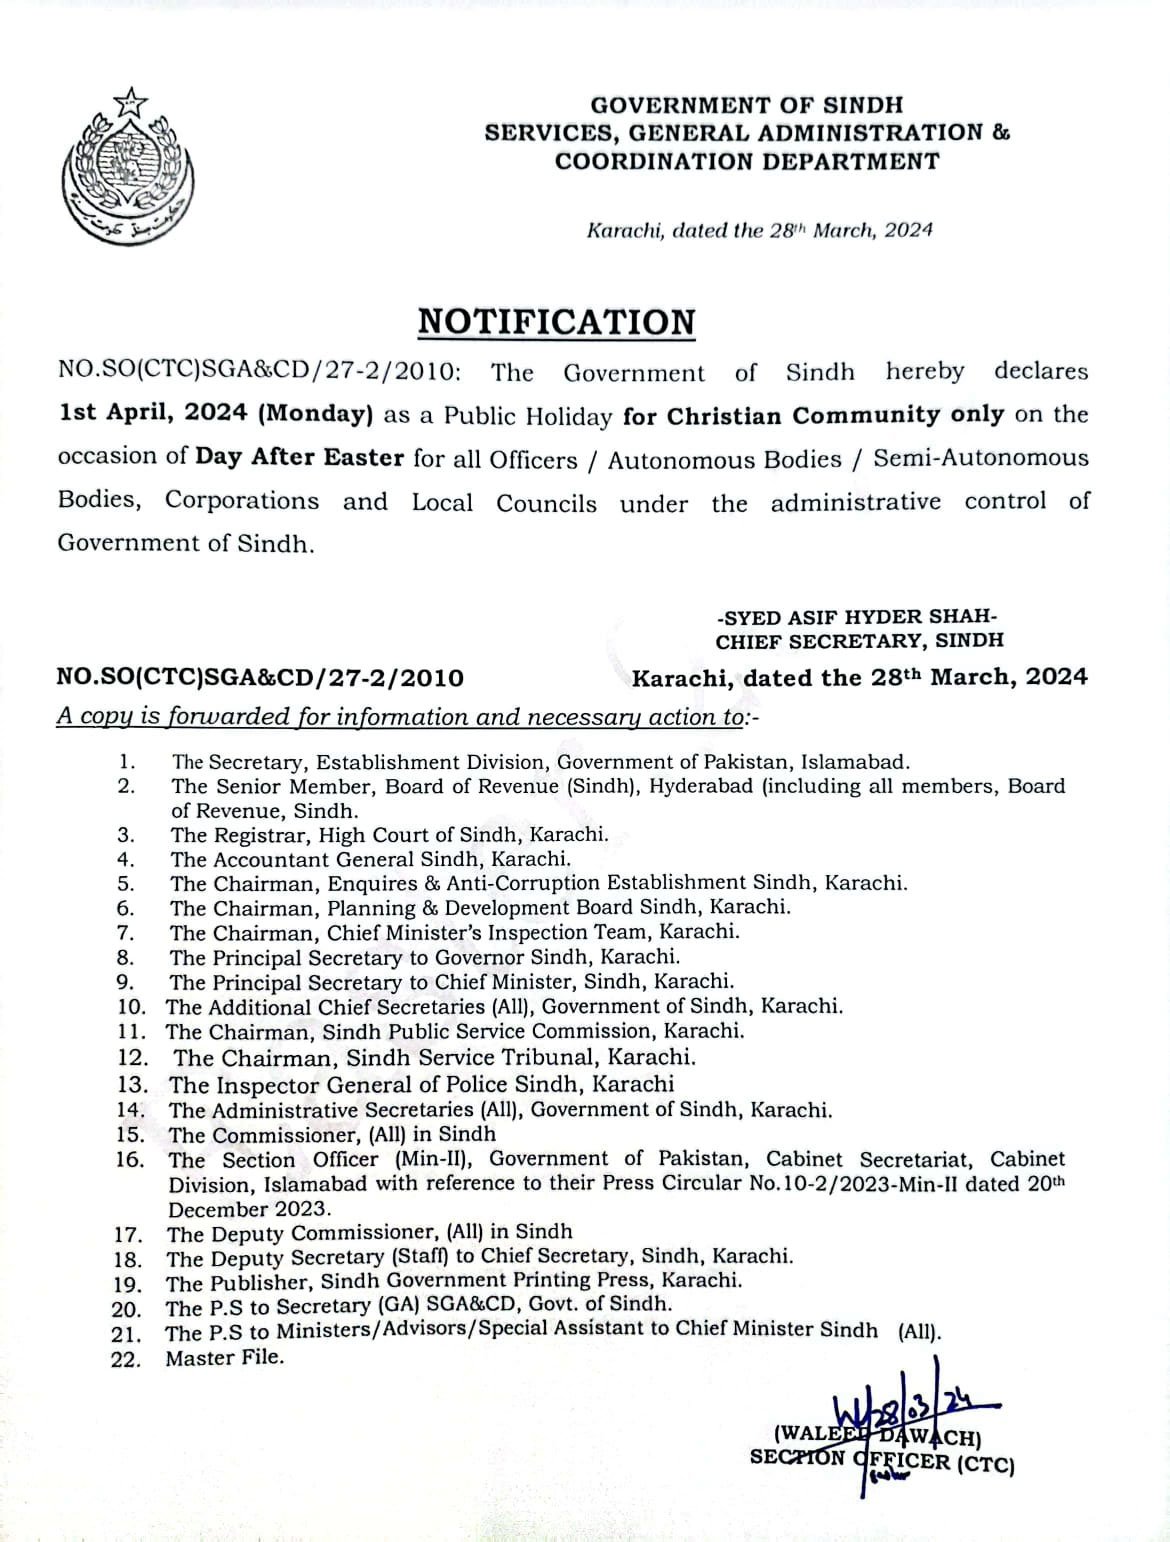 Sindh govt announces public holiday on April 4